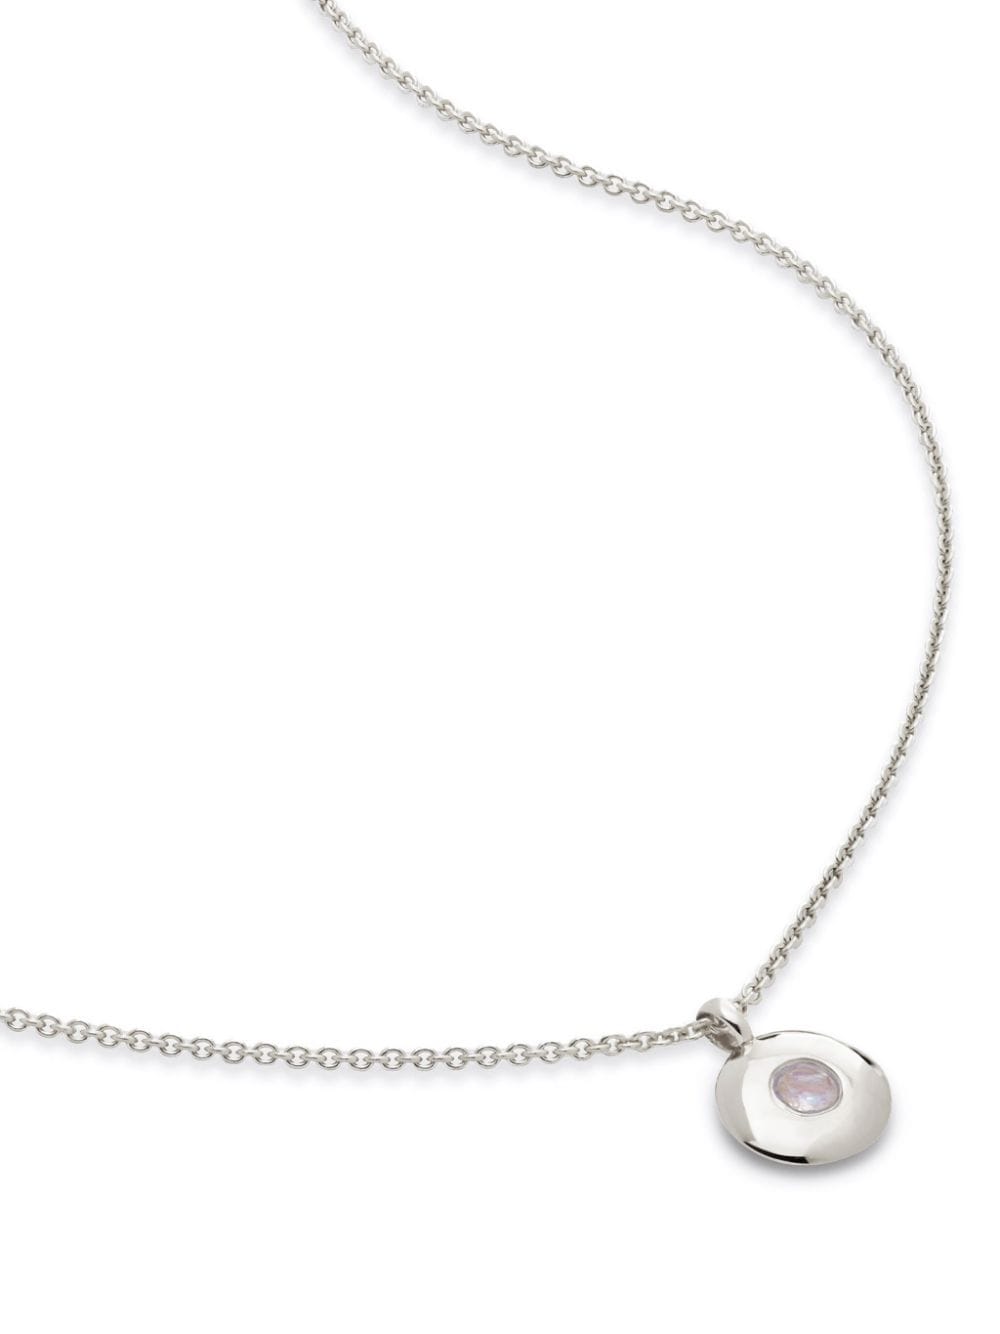 Monica Vinader June birthstone necklace - Silver von Monica Vinader